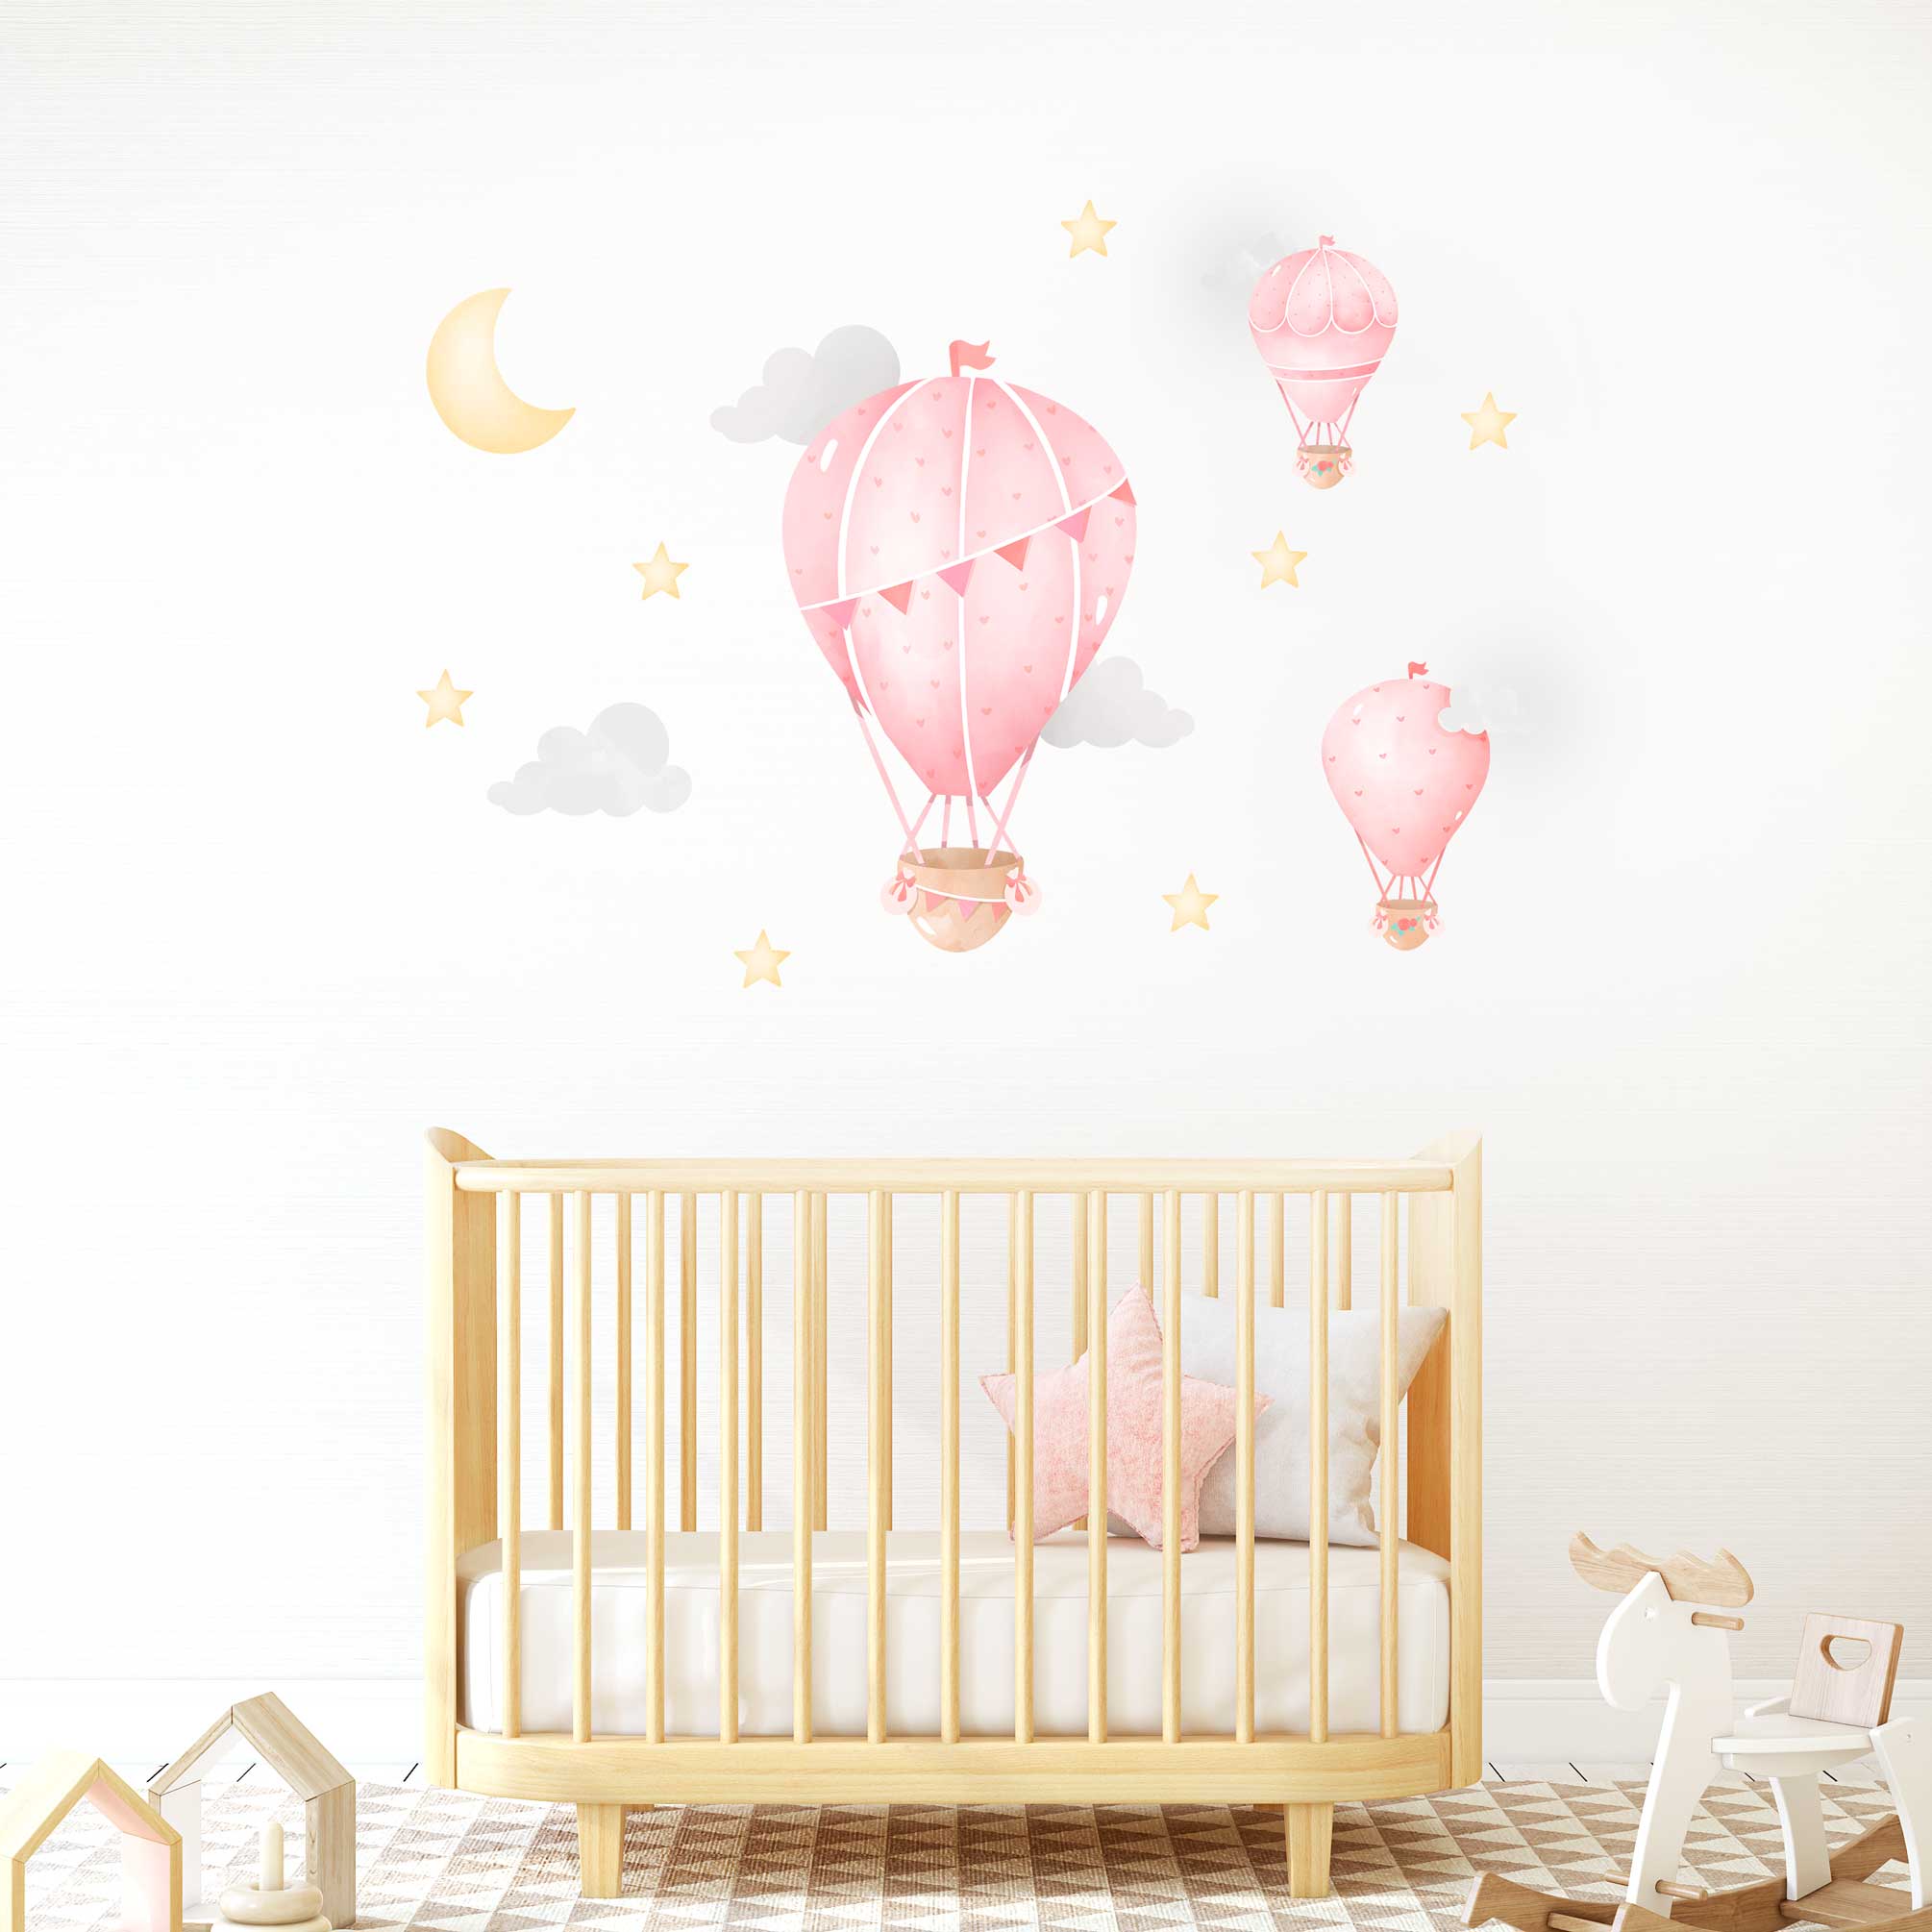 Hot Air Balloon Pink - Wall Decal Sticker- Pink